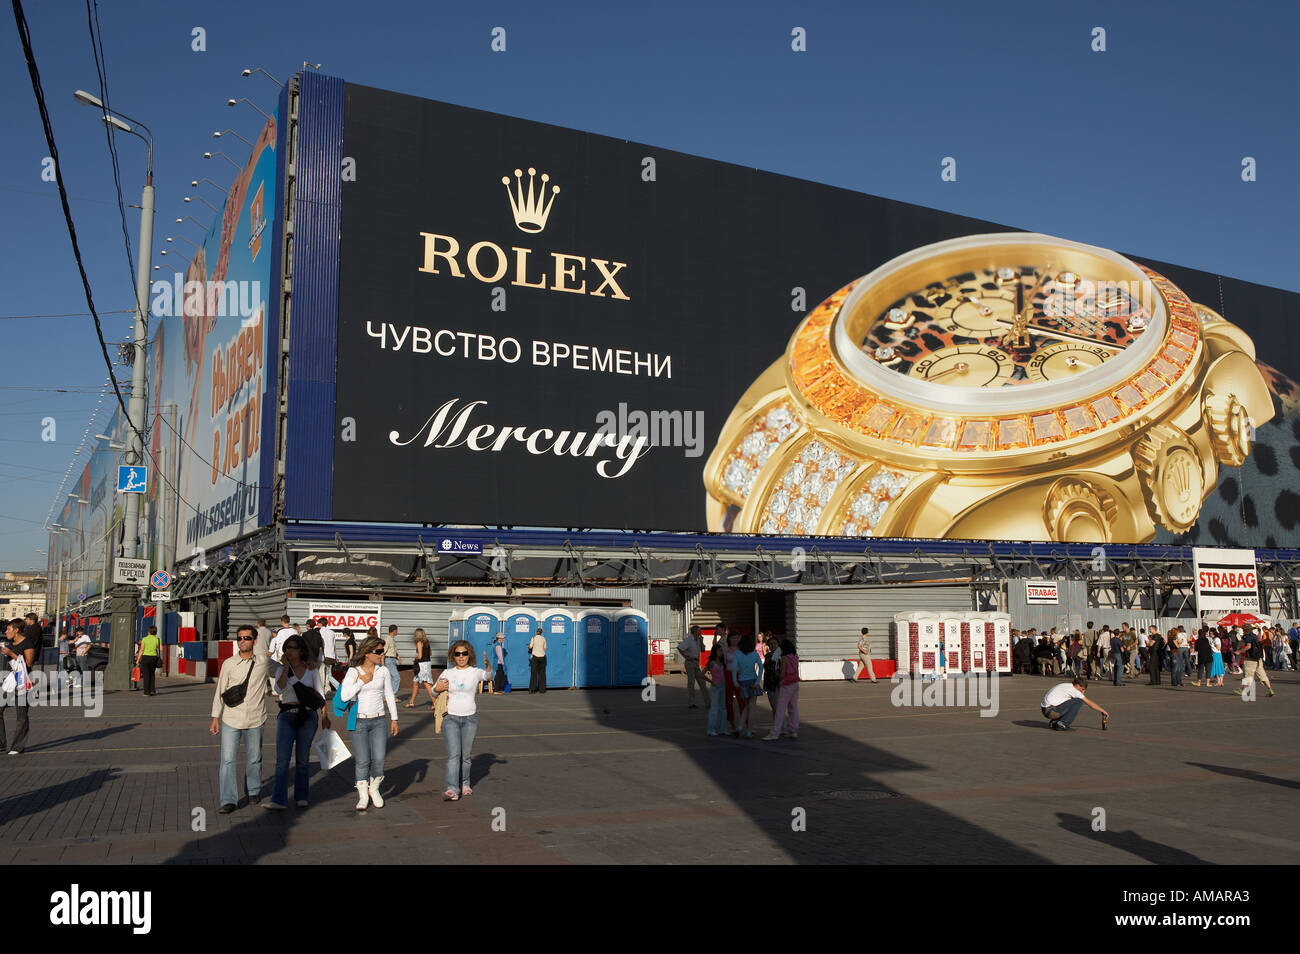 GROßE ROLEX WATCH WERBUNG UND MASSEN VON MENSCHEN IN MANEZHNAYA PLATZ  MOSKAU RUSSLAND Stockfotografie - Alamy